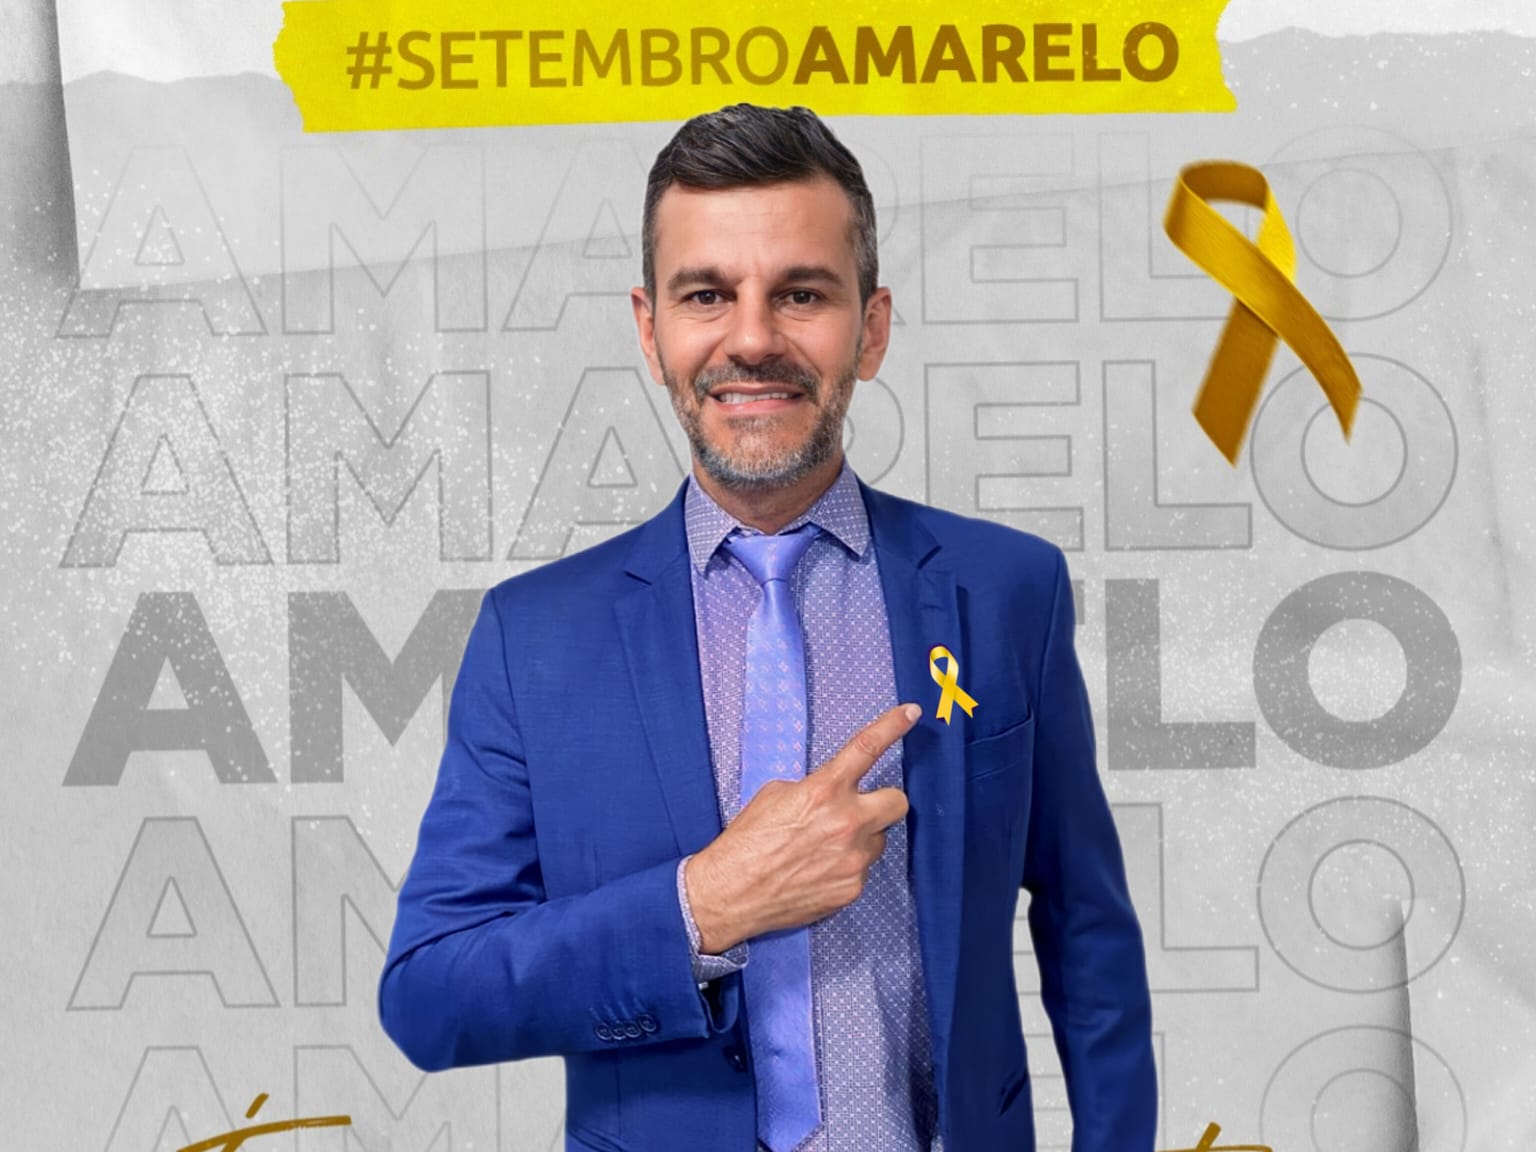 Setembro Amarelo: Vereador Mauro Lacerda convida a população a abraçar a causa e a luta pela valorização da vida